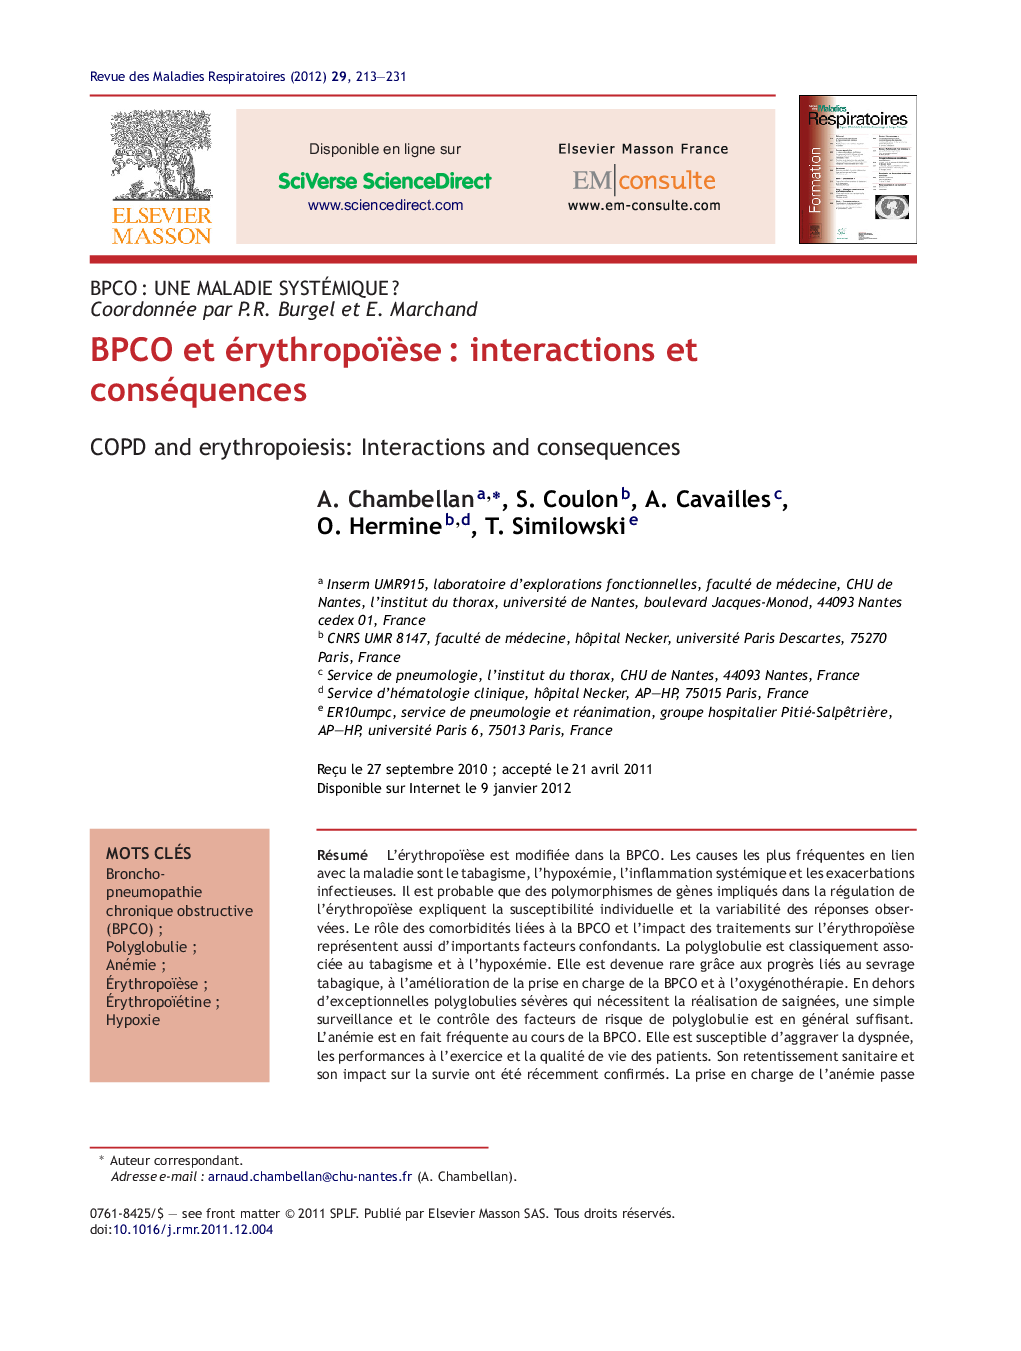 BPCO et érythropoïÃ¨seÂ : interactions et conséquences